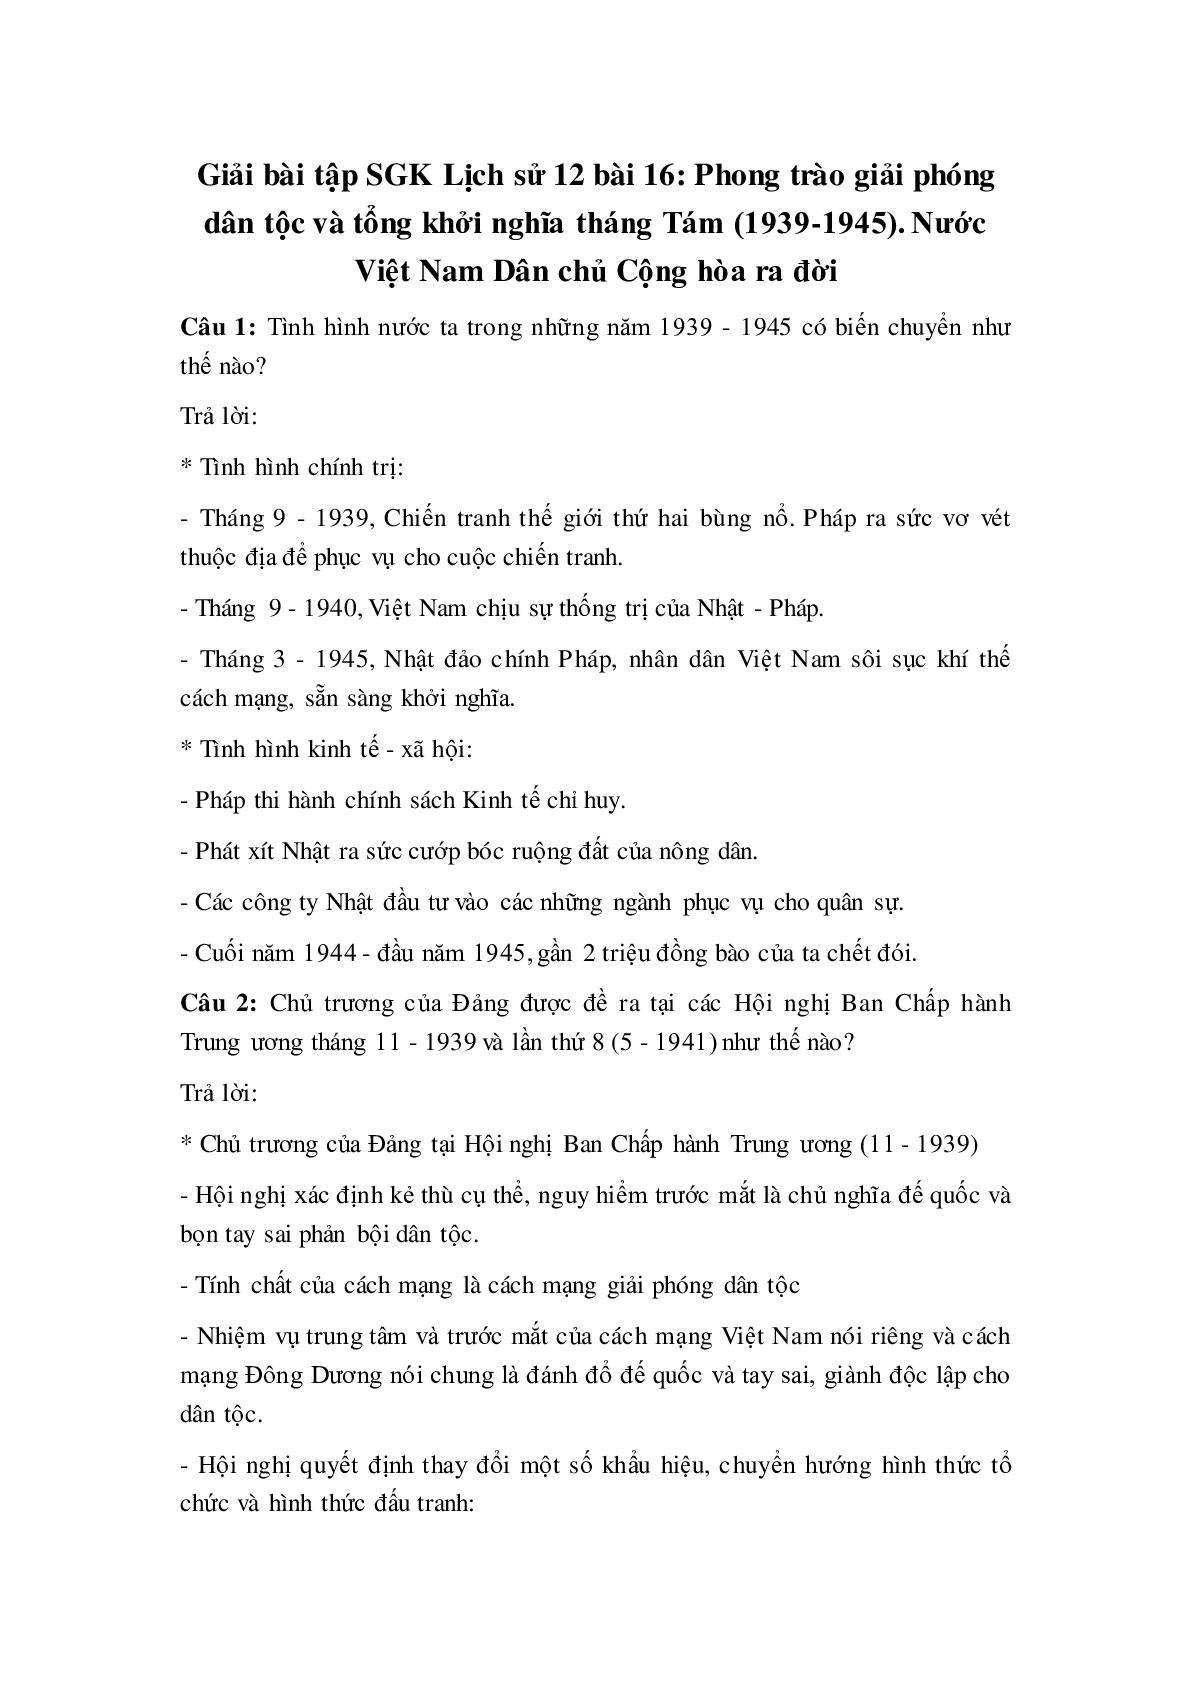 Giải bài tập SGK Lịch sử 12: Bài 16: Phong trào giải phóng dân tộc và tổng khởi nghĩa tháng Tám (1939-1945) - Nước Việt Nam Dân chủ Cộng hòa ra đời mới nhất (trang 1)